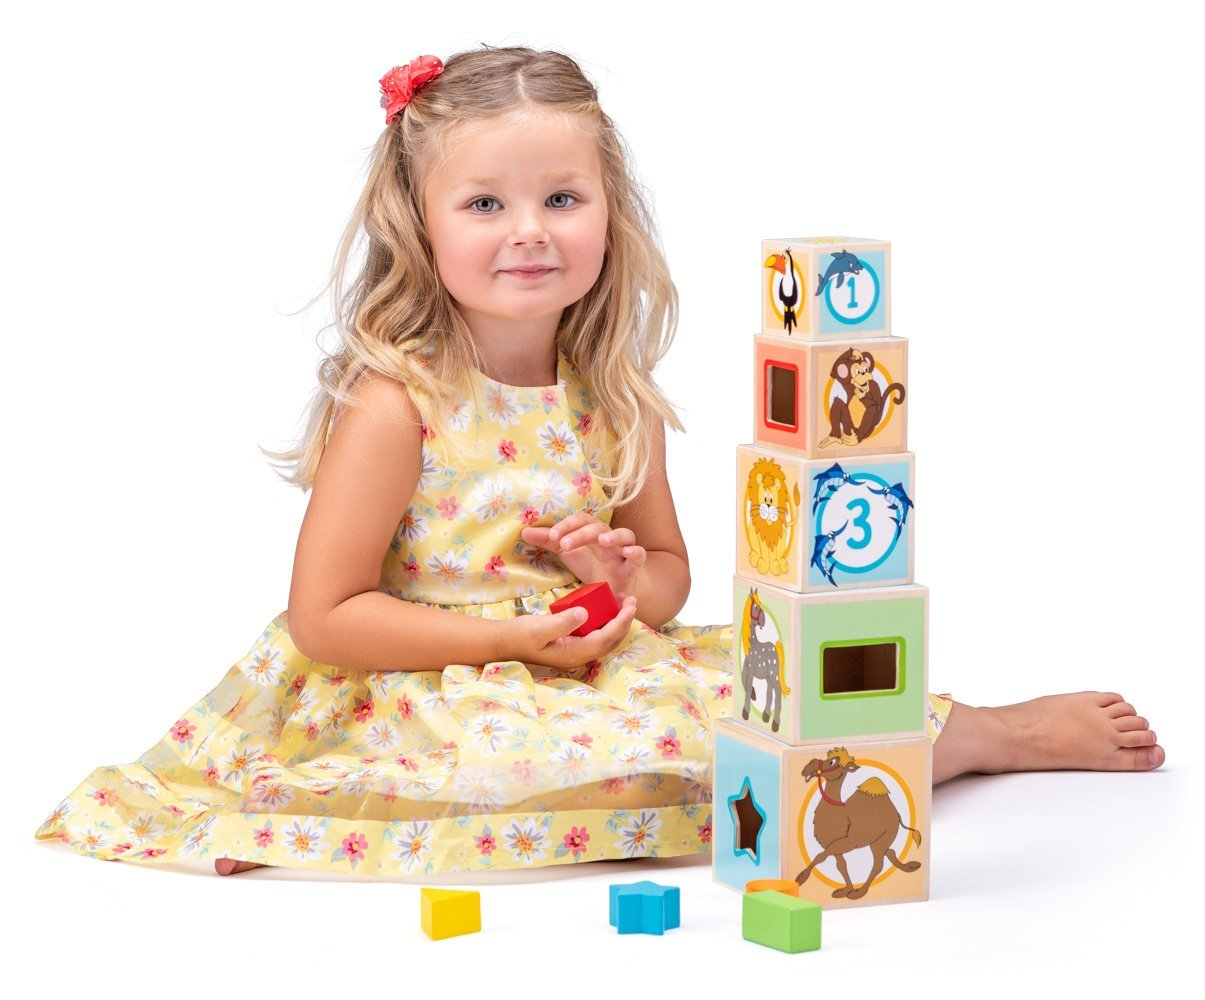 Didaktická hračka Woody 102195005 je jednoduchá stavebnice, která potěší malé děti i jejich rodiče.